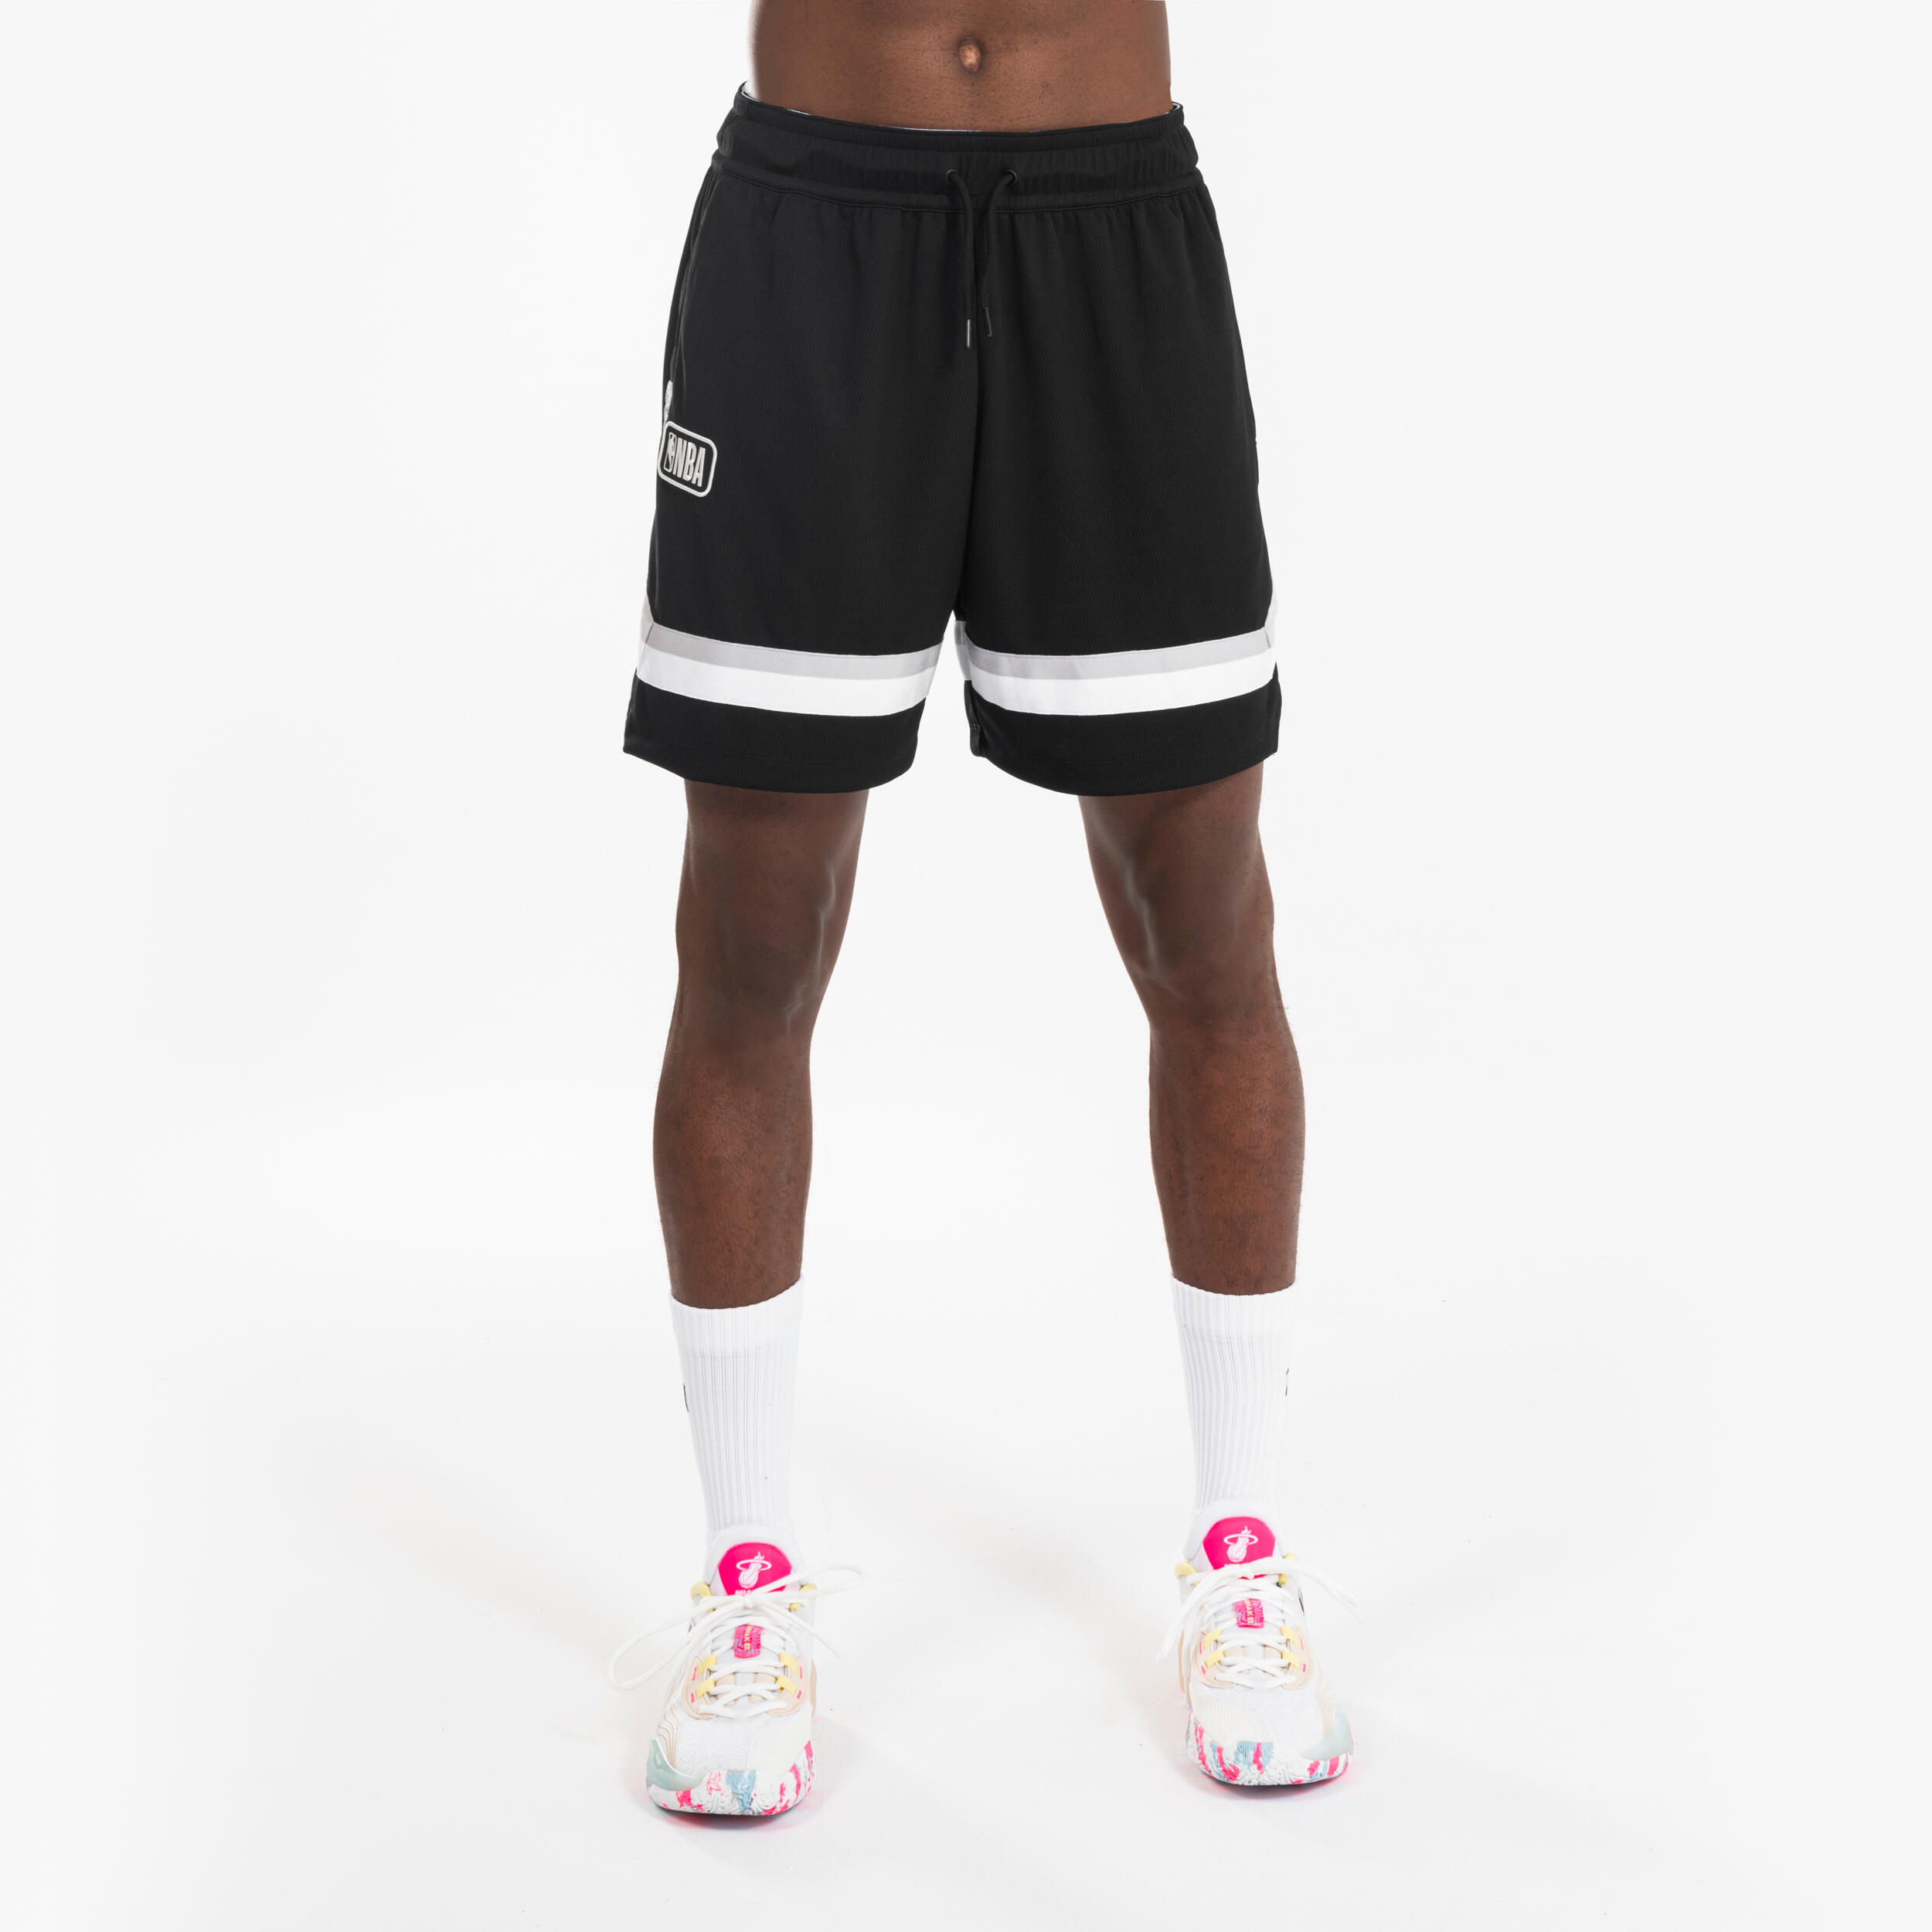 TARMAK Short De Basketball Nba Homme/Femme - Sh 900 Ad Noir